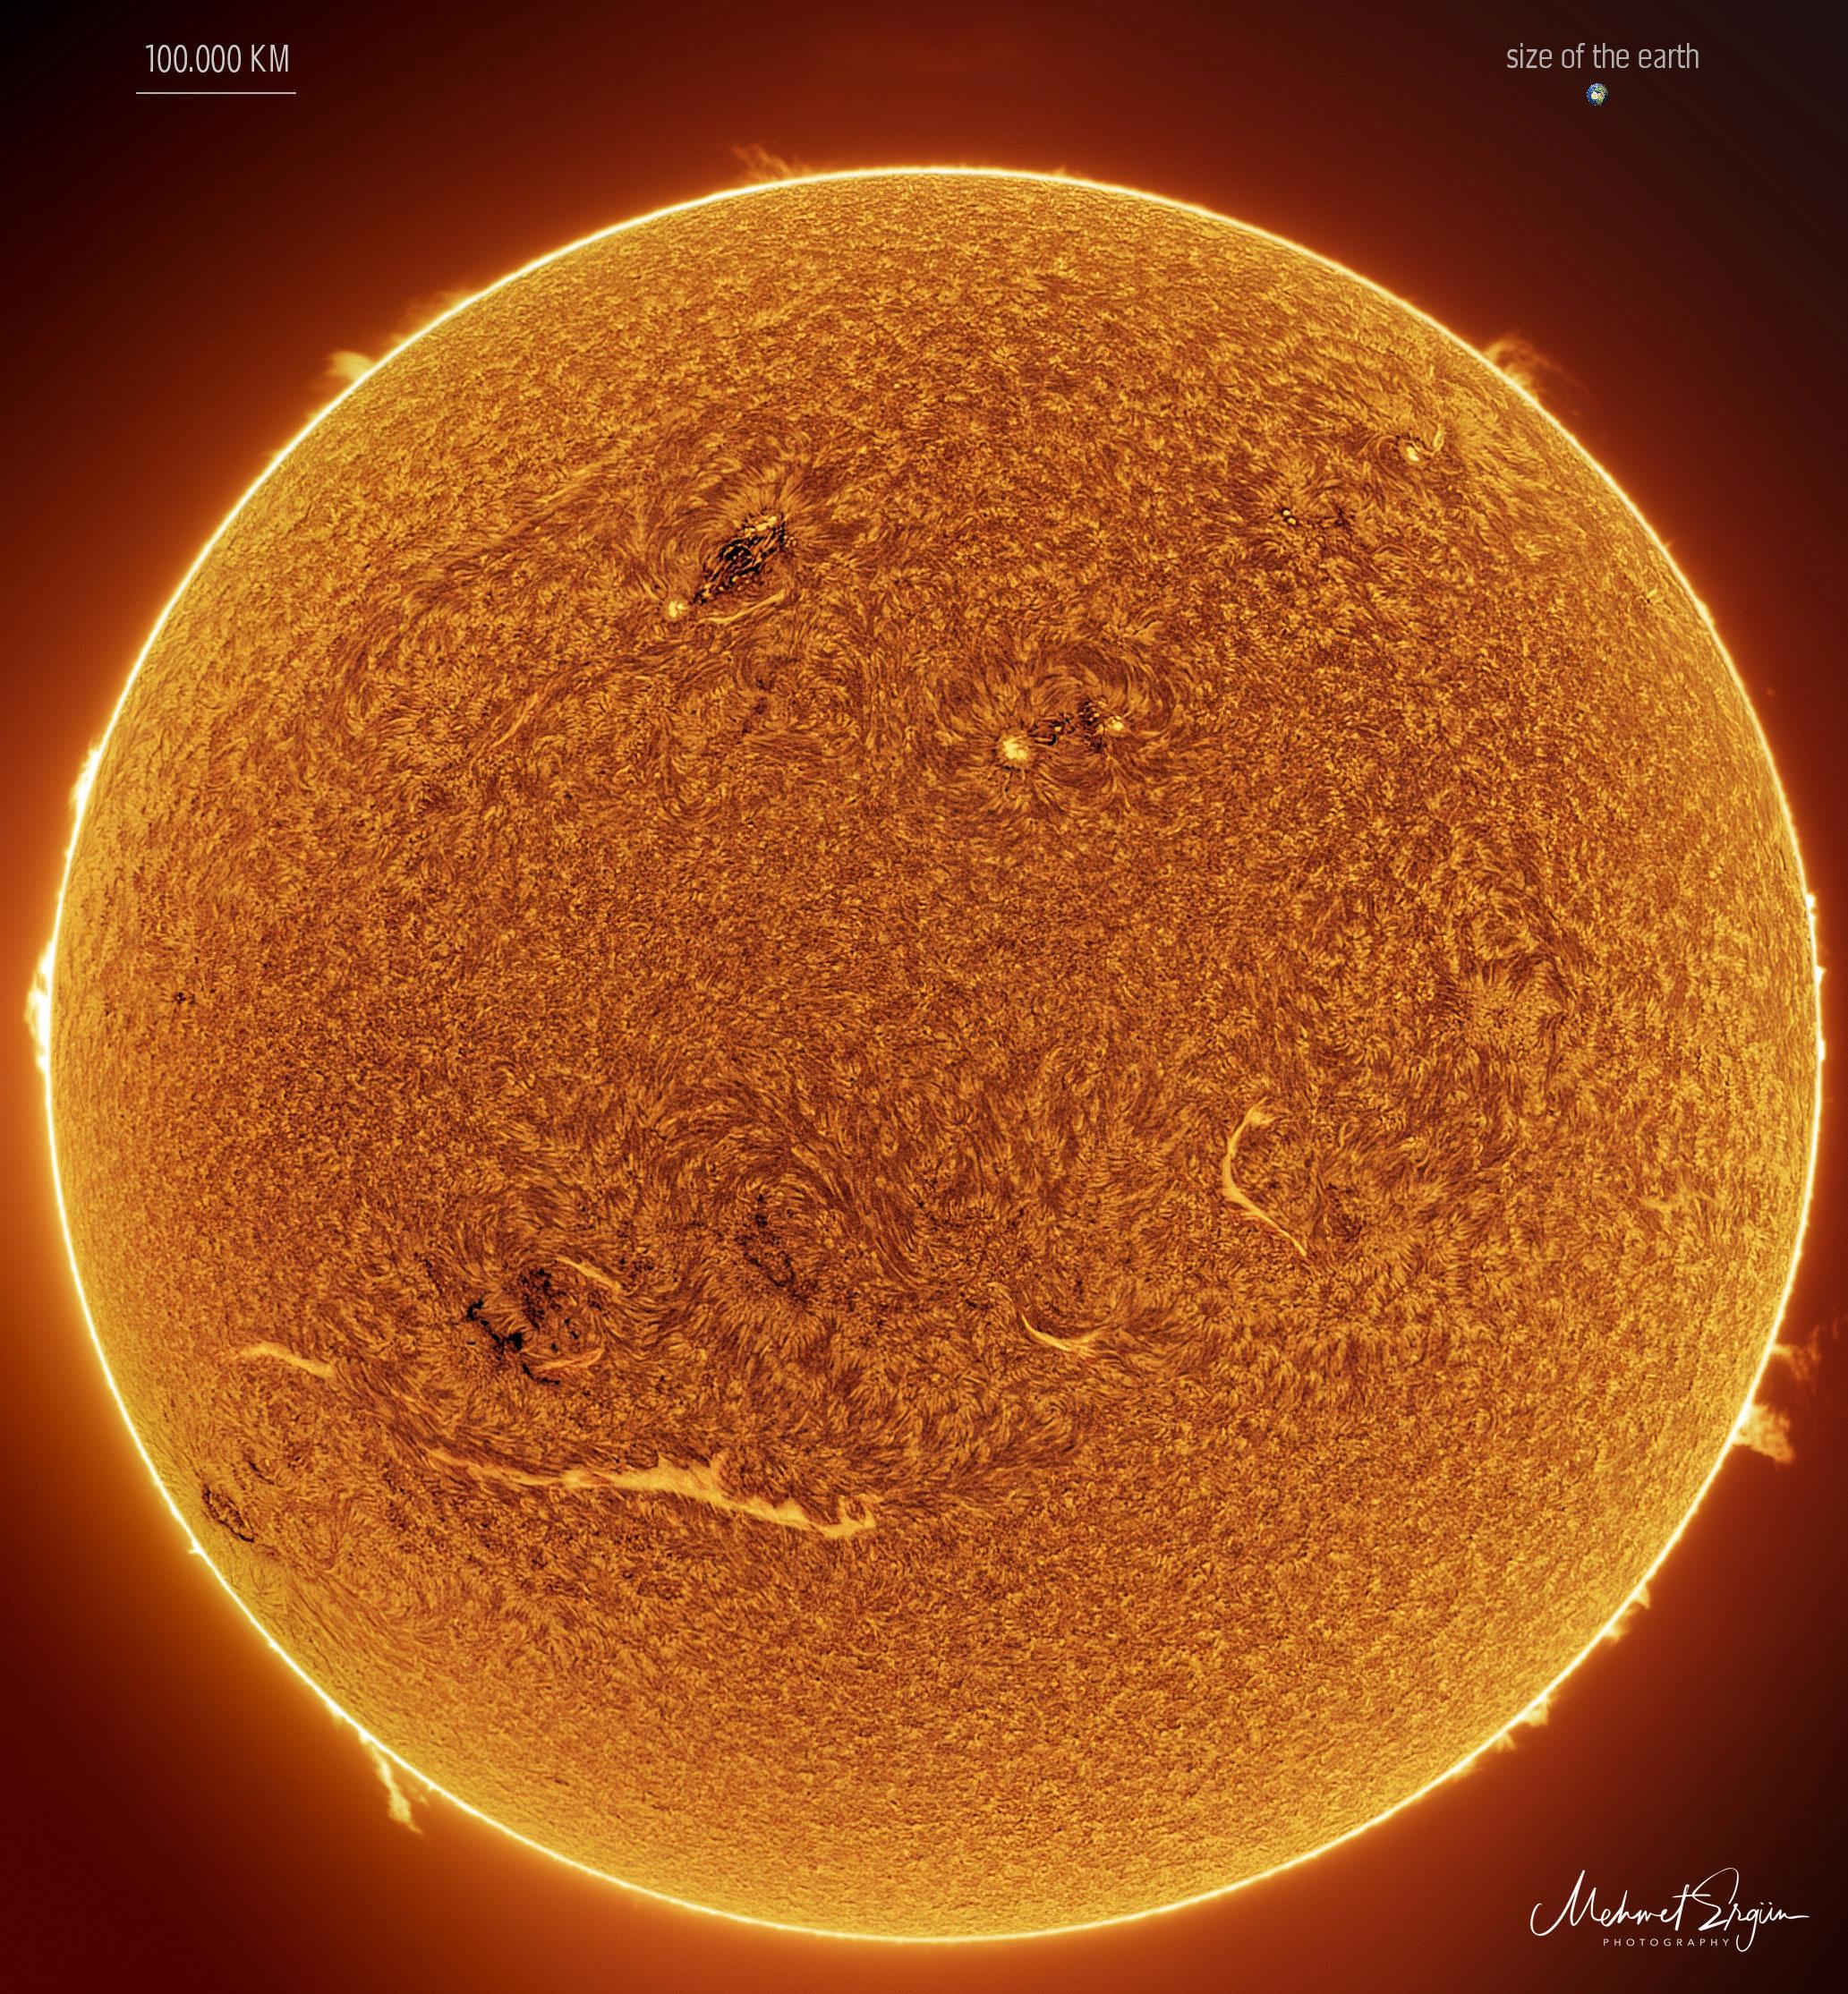 الشمس مصوّرة بلون يسمح بتفاصيل عالية، تمتلك الكرة البرتقاليّة الكبيرة بضع خطوط ساطعة ونسيجاً كسجّادة. تظهر بعض الشواظ حول الحواف